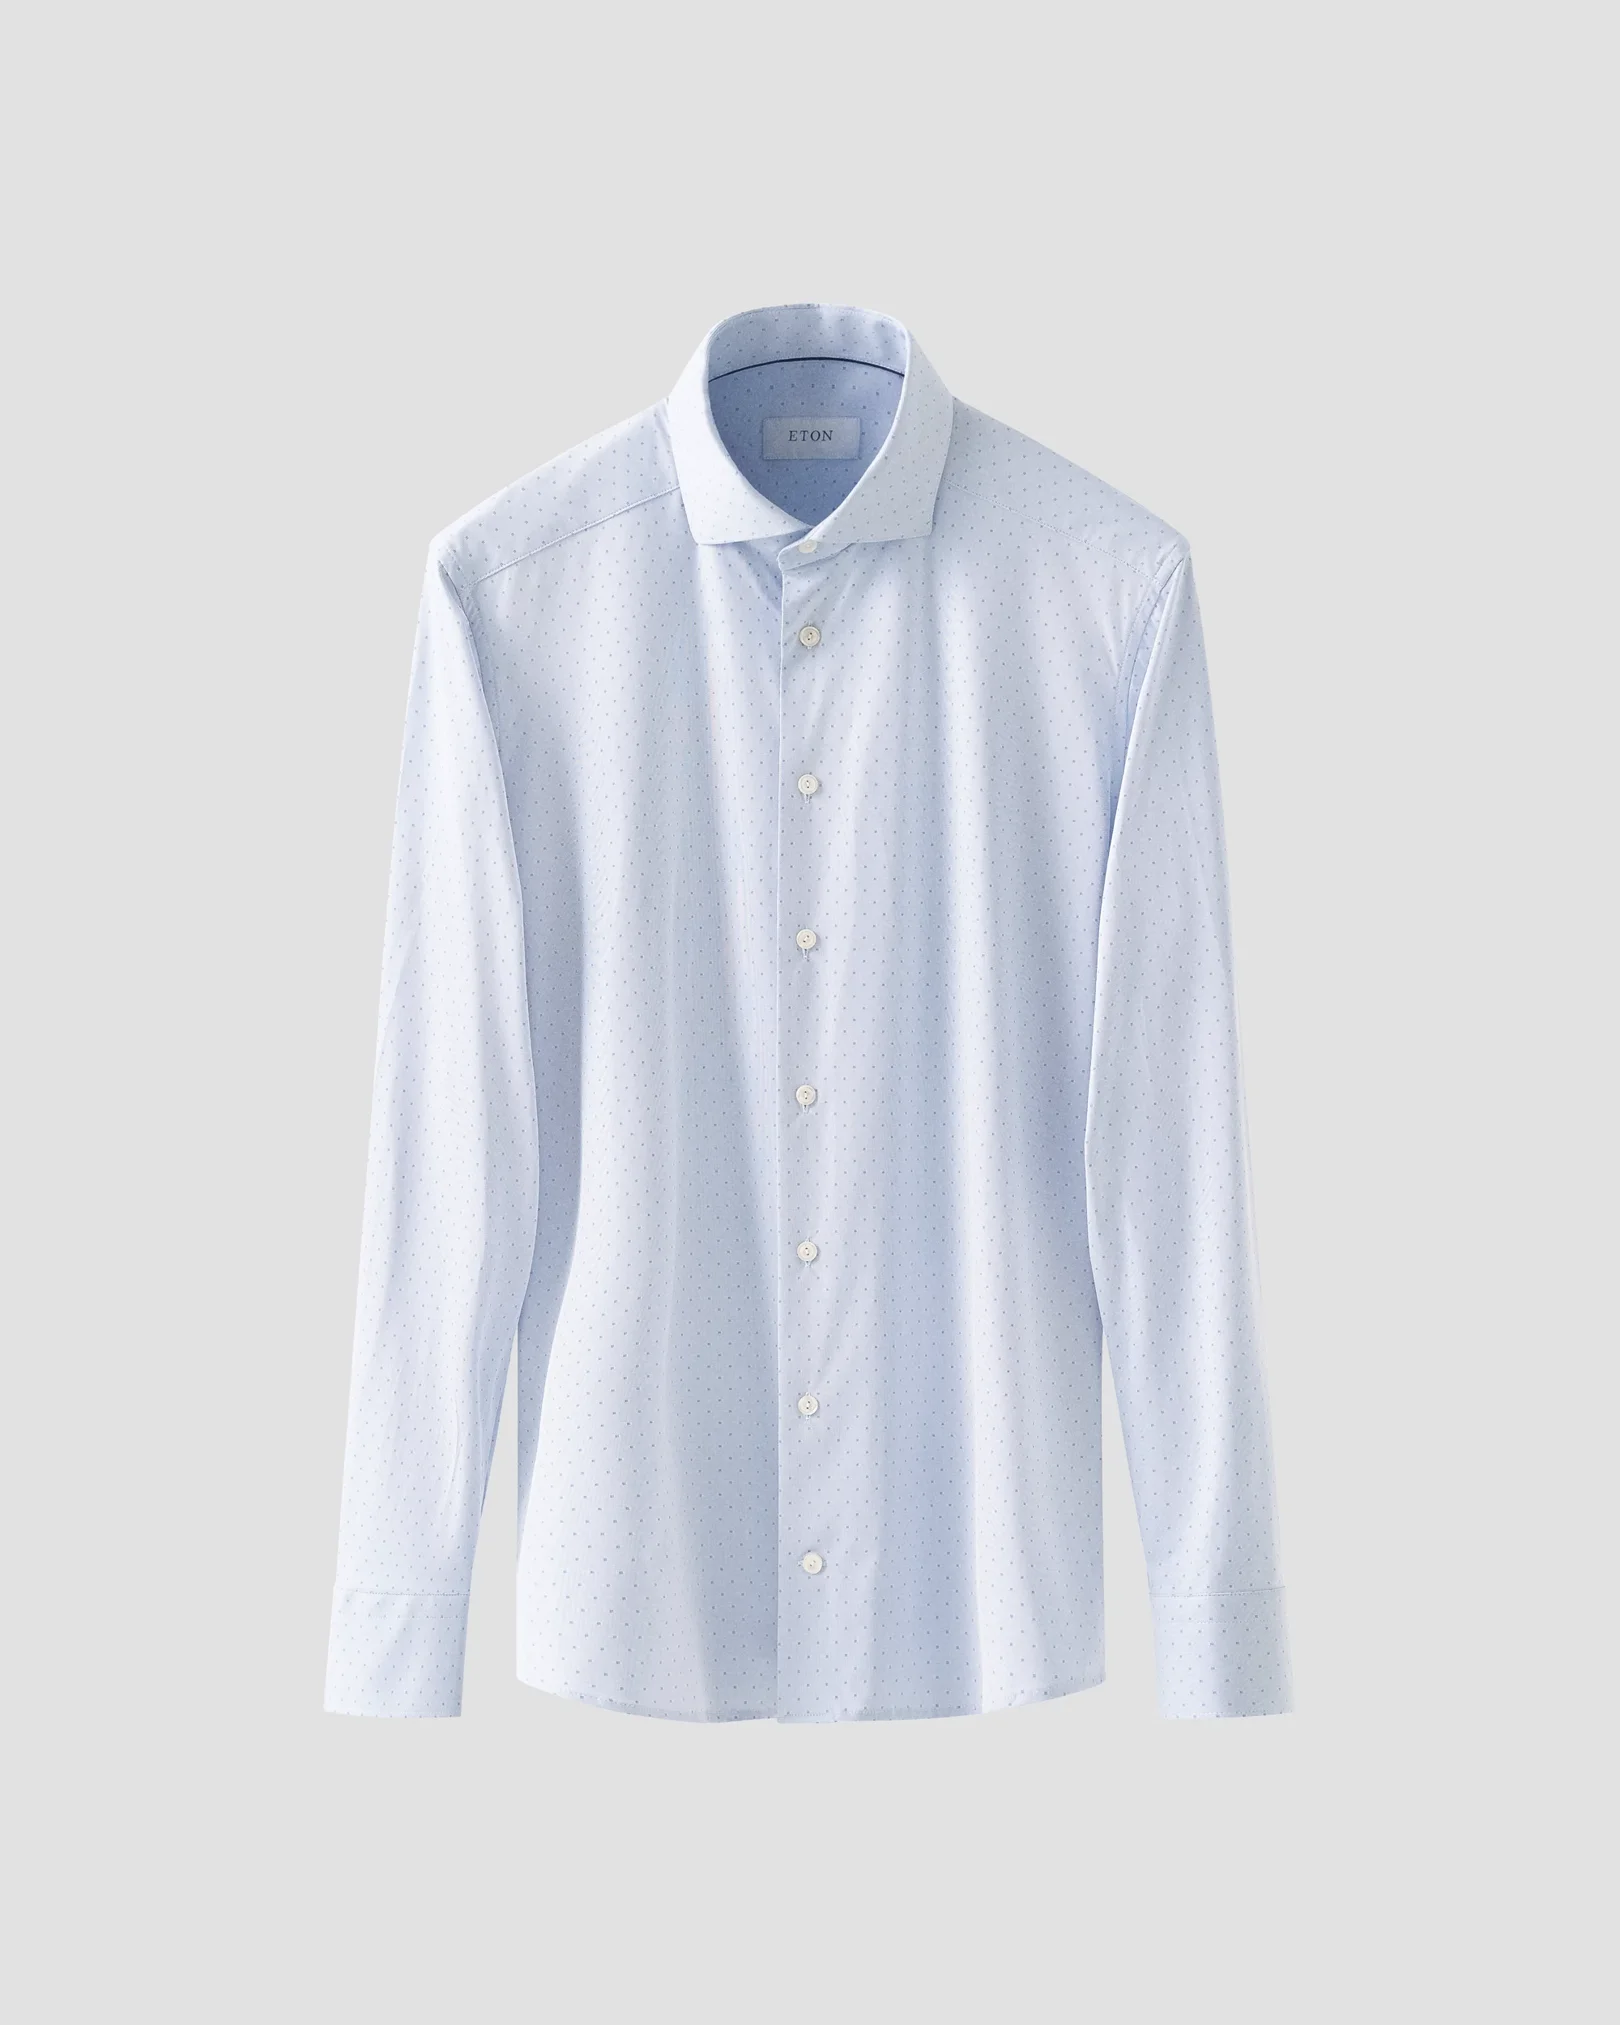 Eton - Light blue Pin-Dot Four-Way Strech Shirt